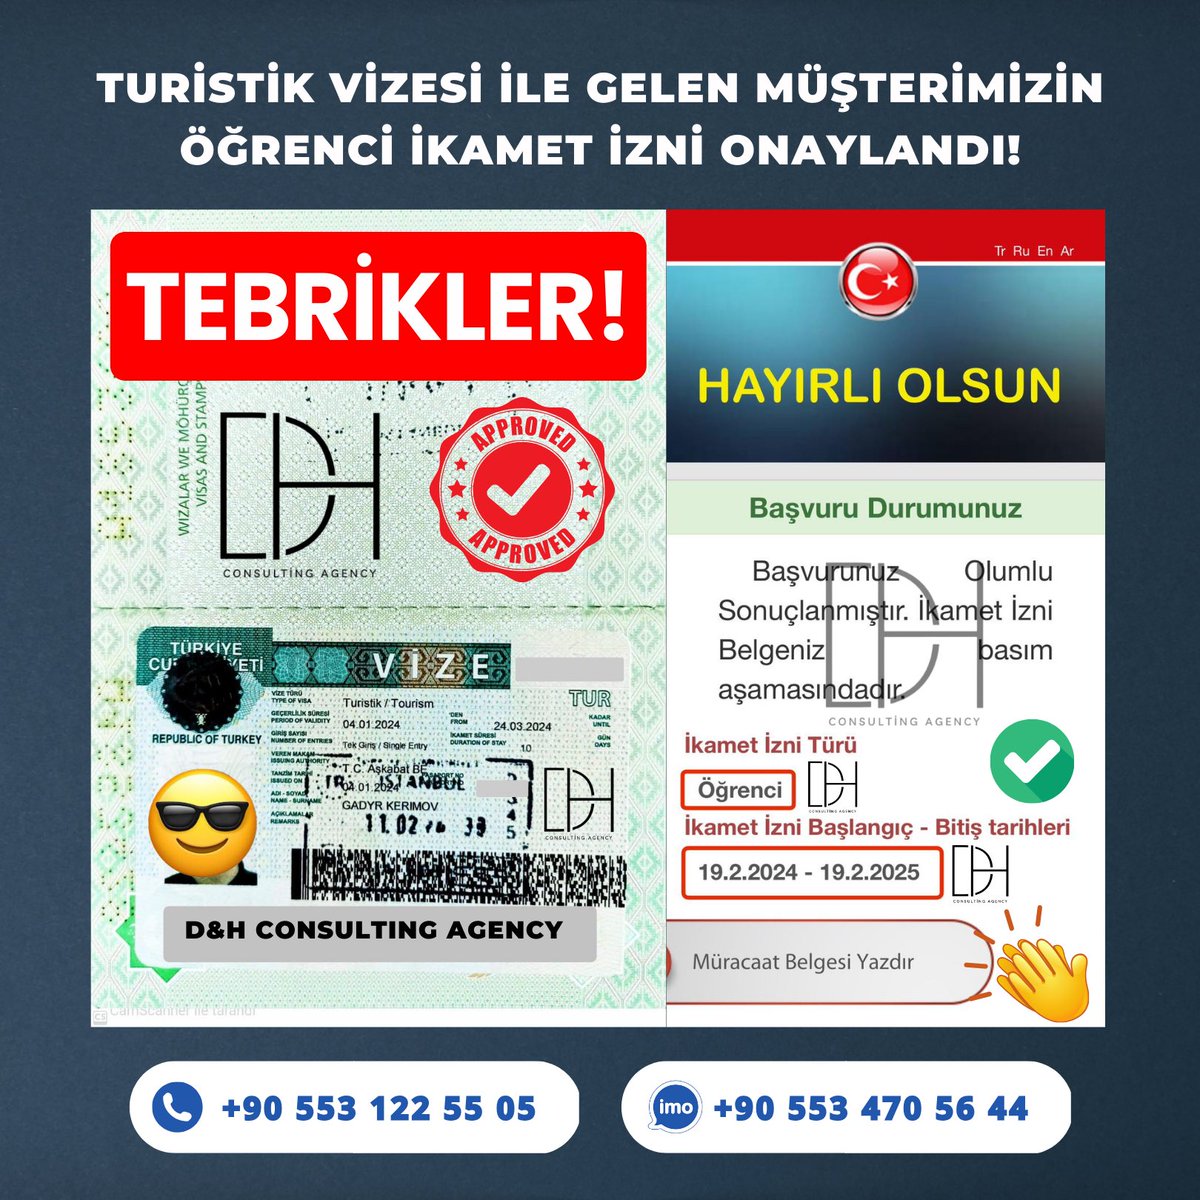 ✅ Turistik Vizesi ile Gelen Müşterimizin Öğrenci İkamet İzni Onaylandı! Hayırlı Olsun!!!

📲 +90 553 122 55 05
📲 +90 553 470 56 44

#ikamet #turistikvize #ikametizni #oturumi̇zni #studyinturkey #talyplar #dhconsulting #Turkey